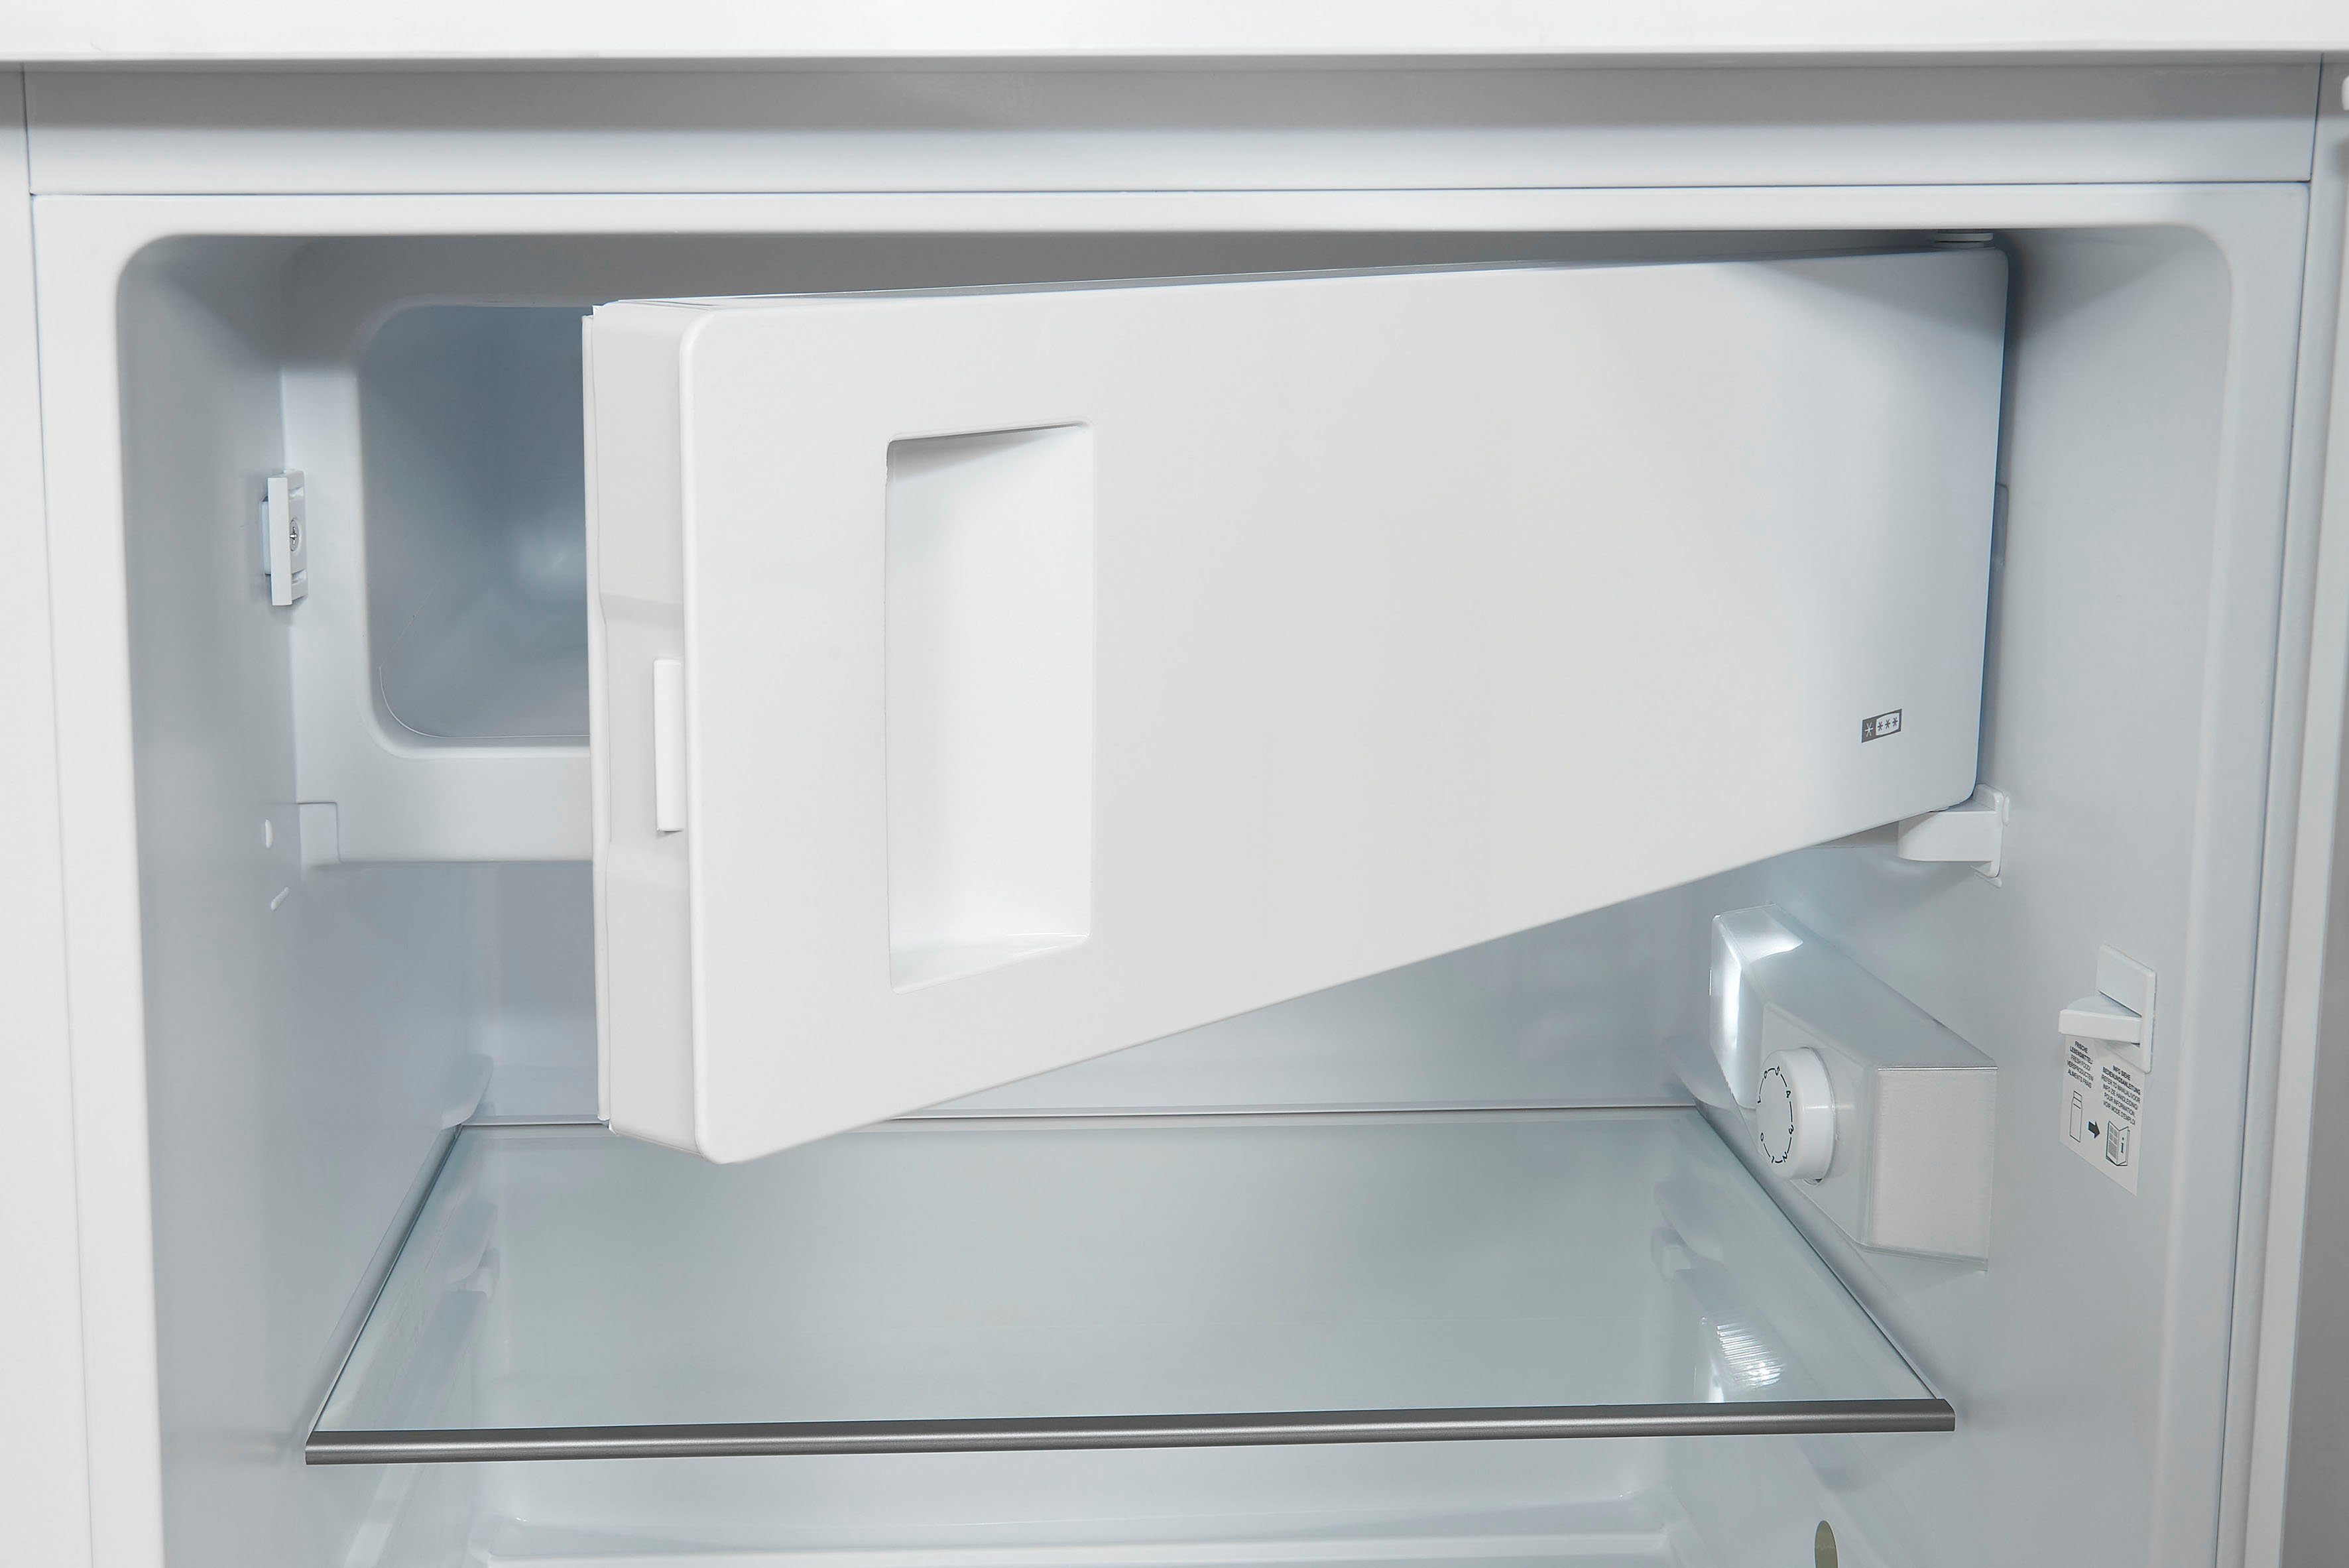 exquisit Kühlschrank KS16-4-H-010E breit 56 hoch, cm 85 cm weiss